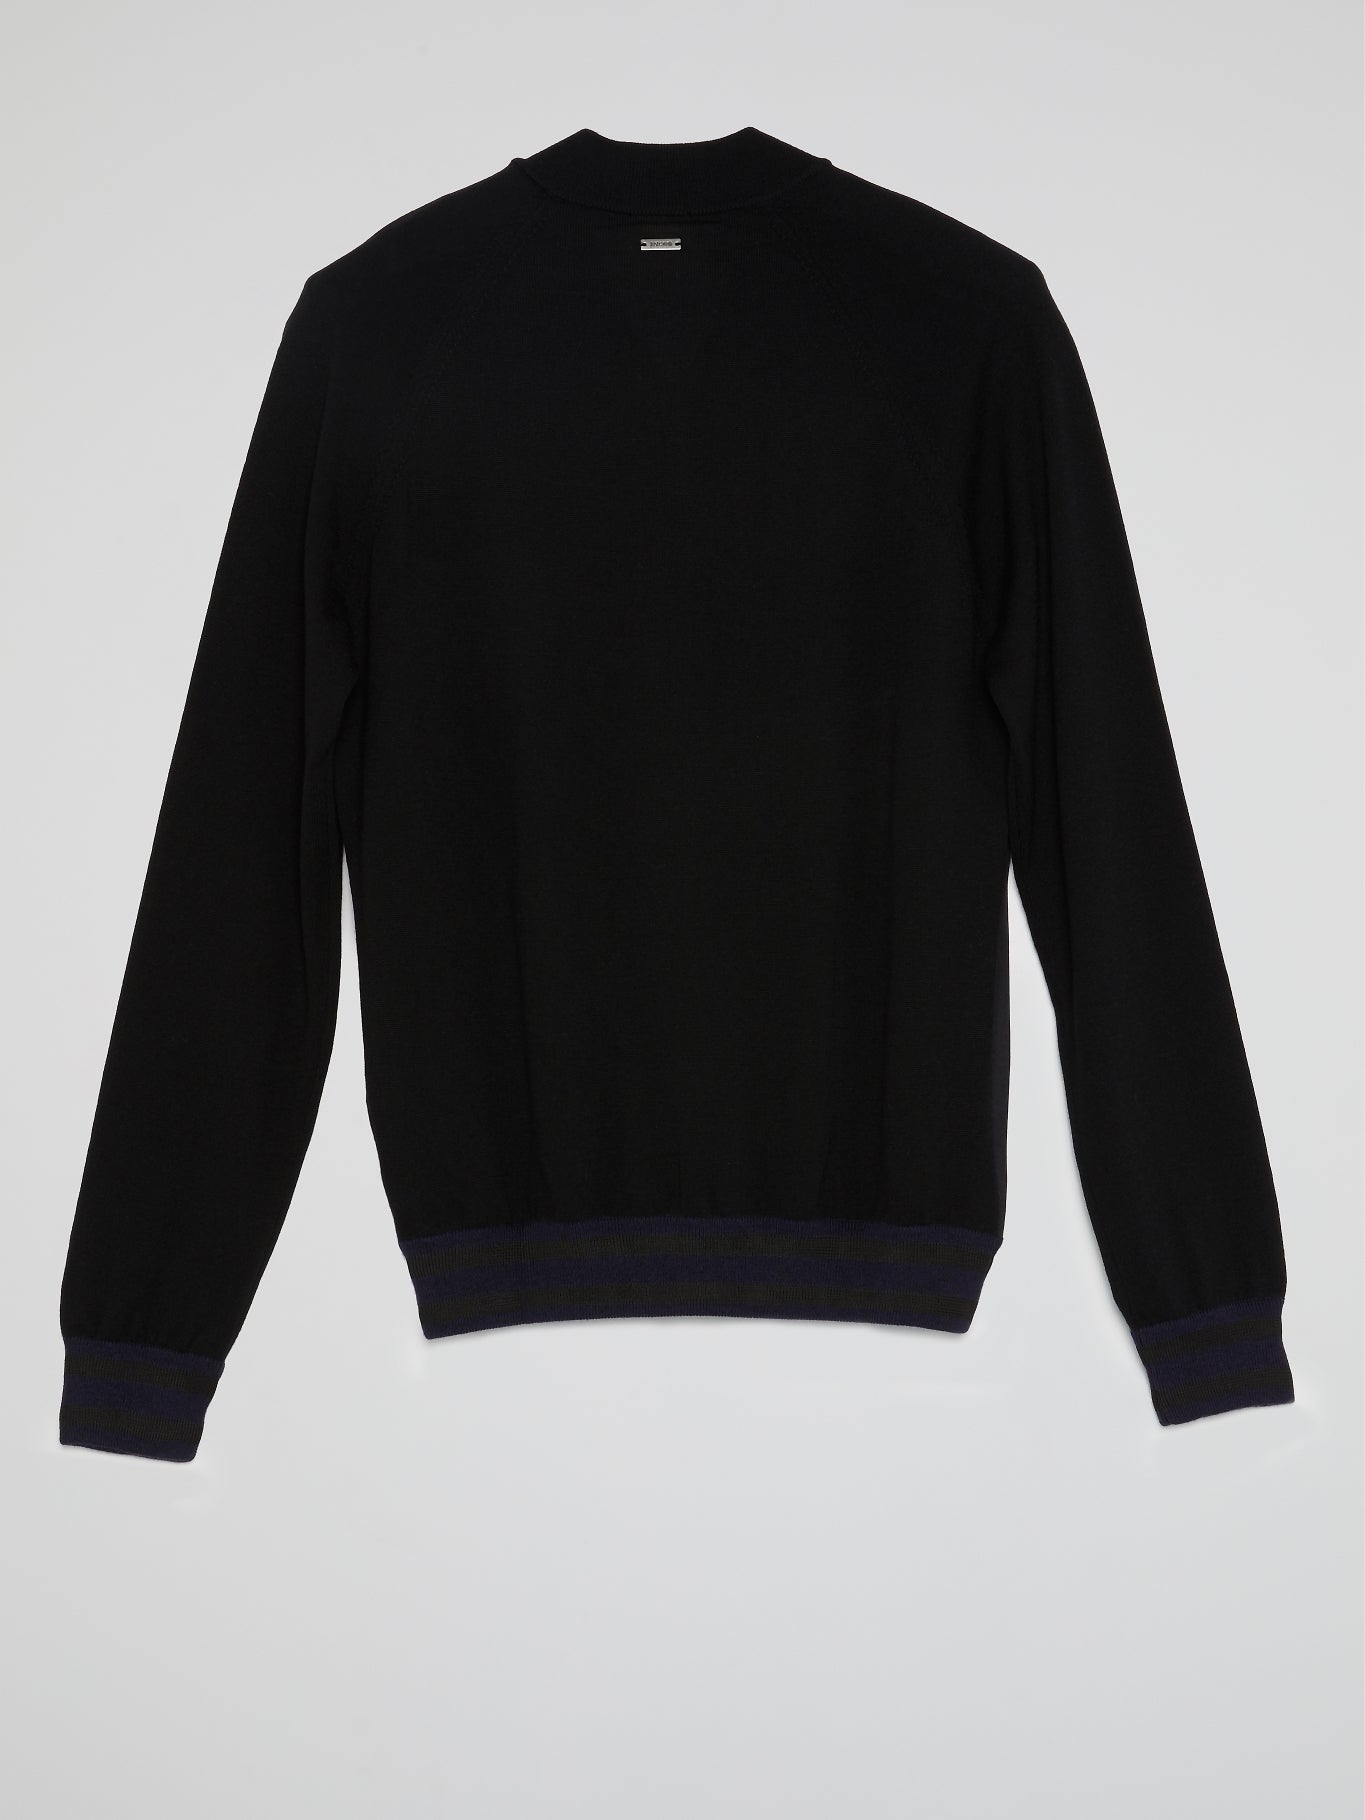 Black Printed Zip Up Sweatshirt